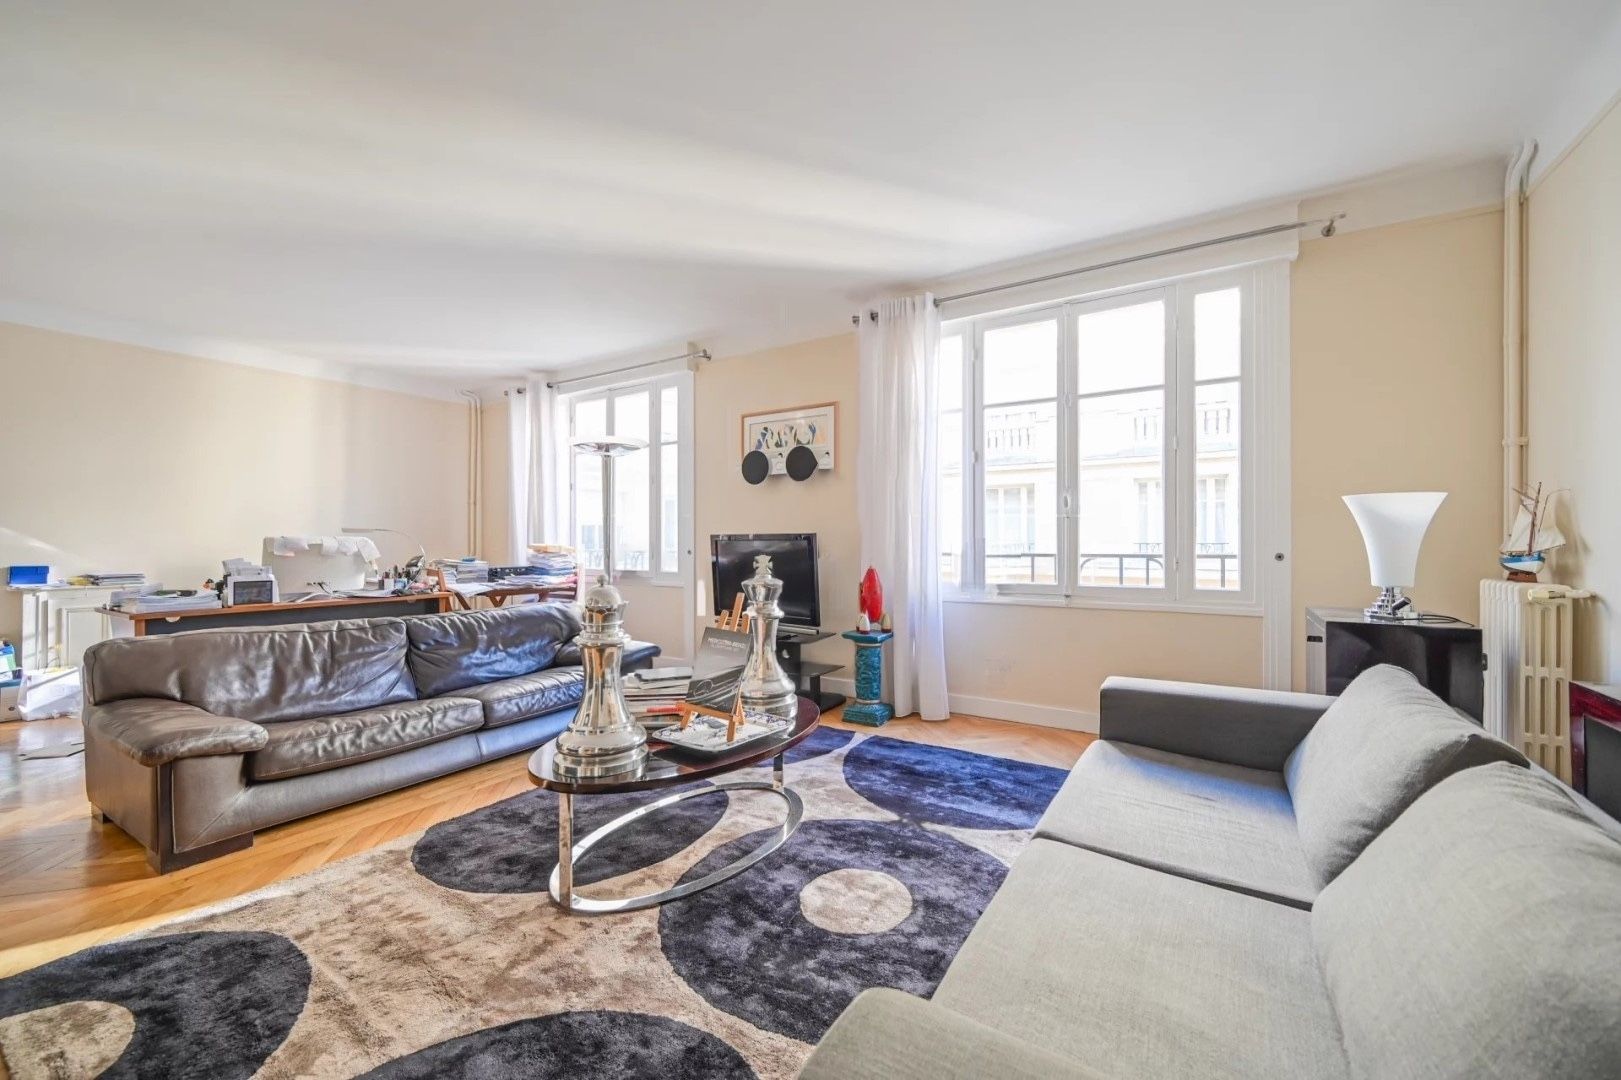 Appartement T3 (84 m²) en vente dans le 16e arrondissement de Paris (1/4)